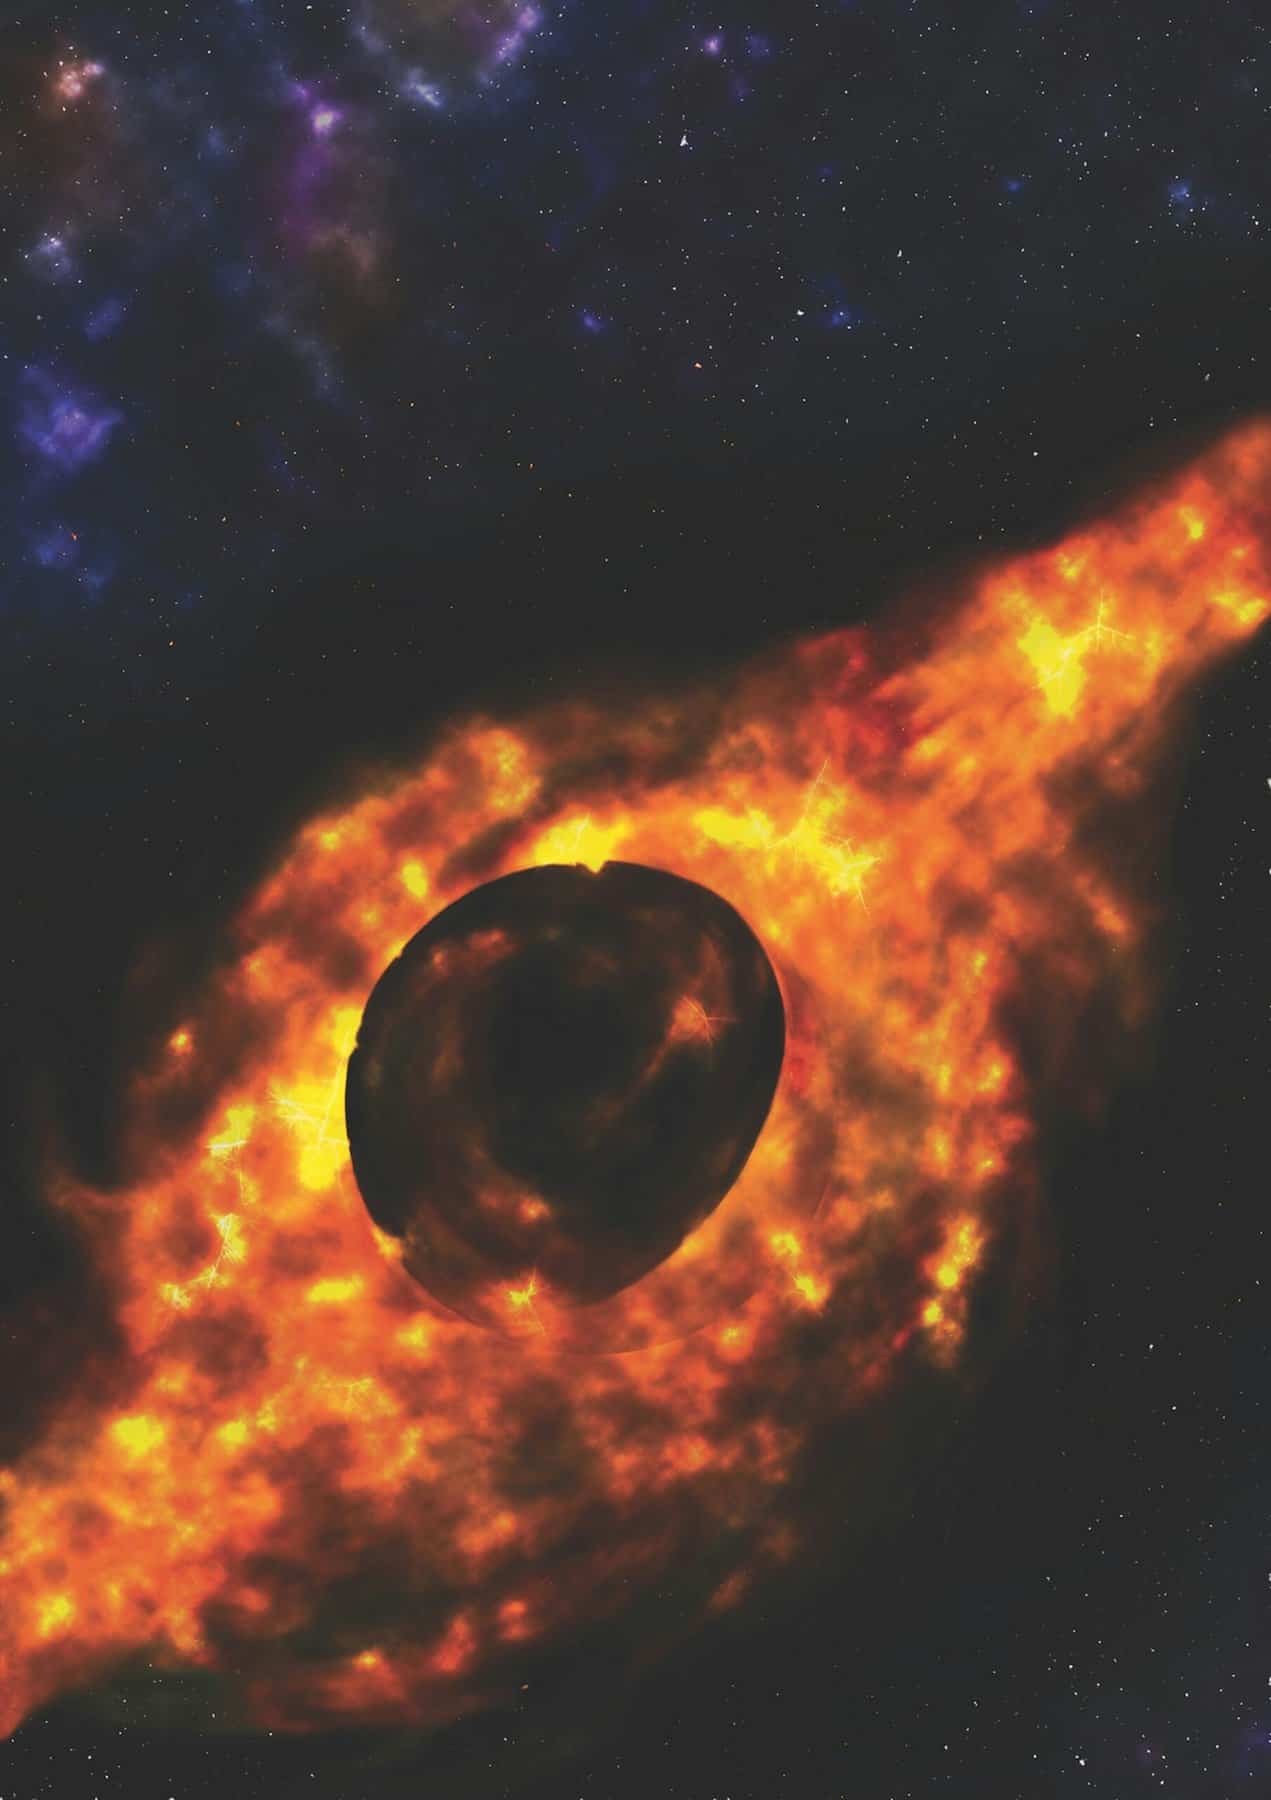 これまで見つかった中で最も明るい天体は1日に太陽1個分の質量を貪る超巨大ブラックホールだった